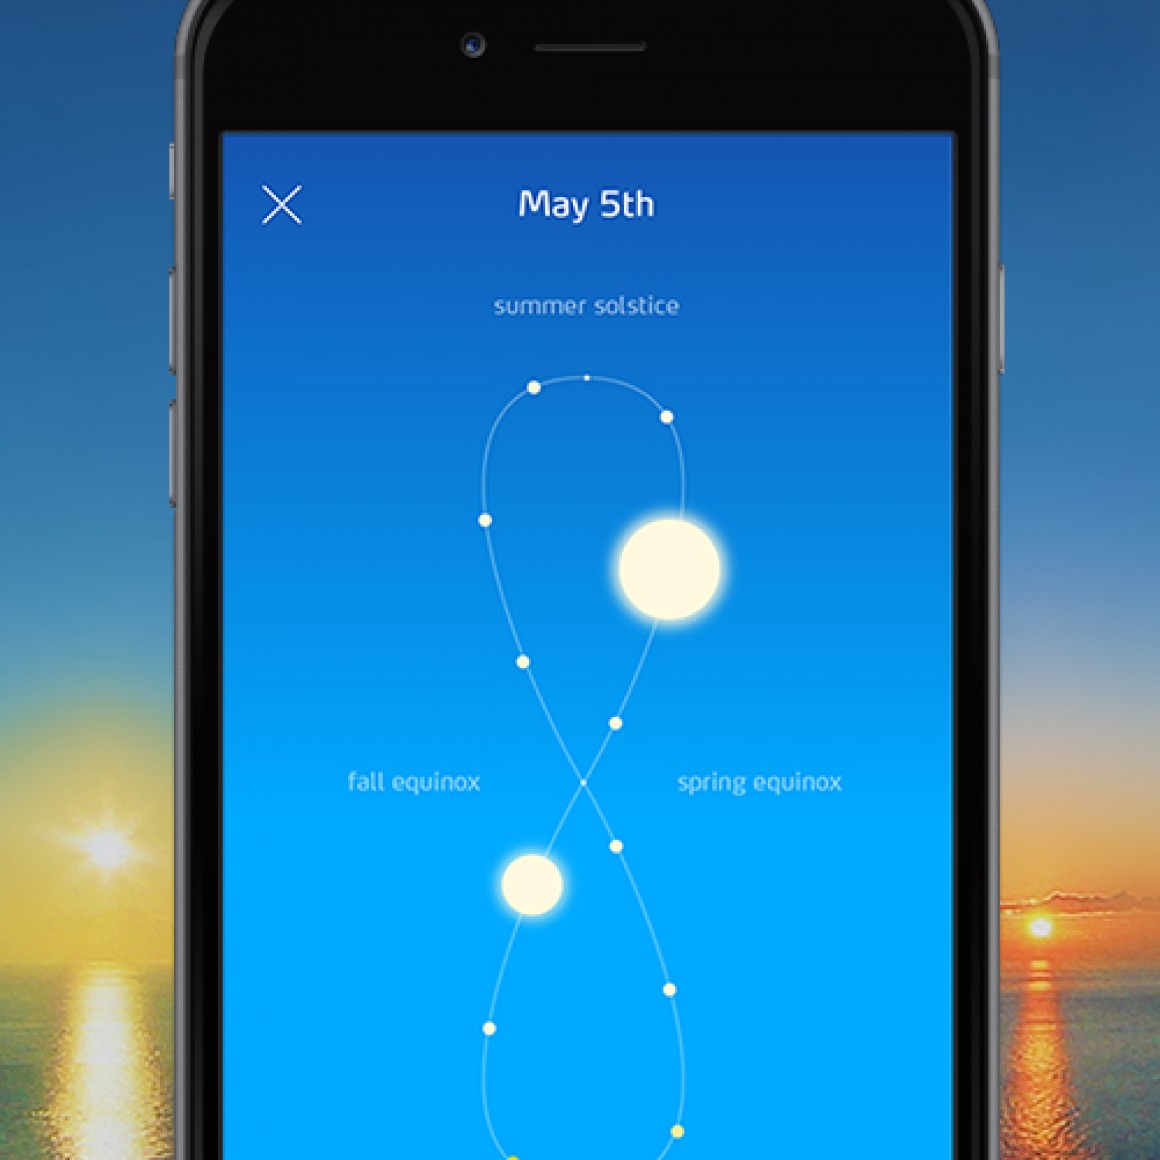 Sunn app now available for iOS!